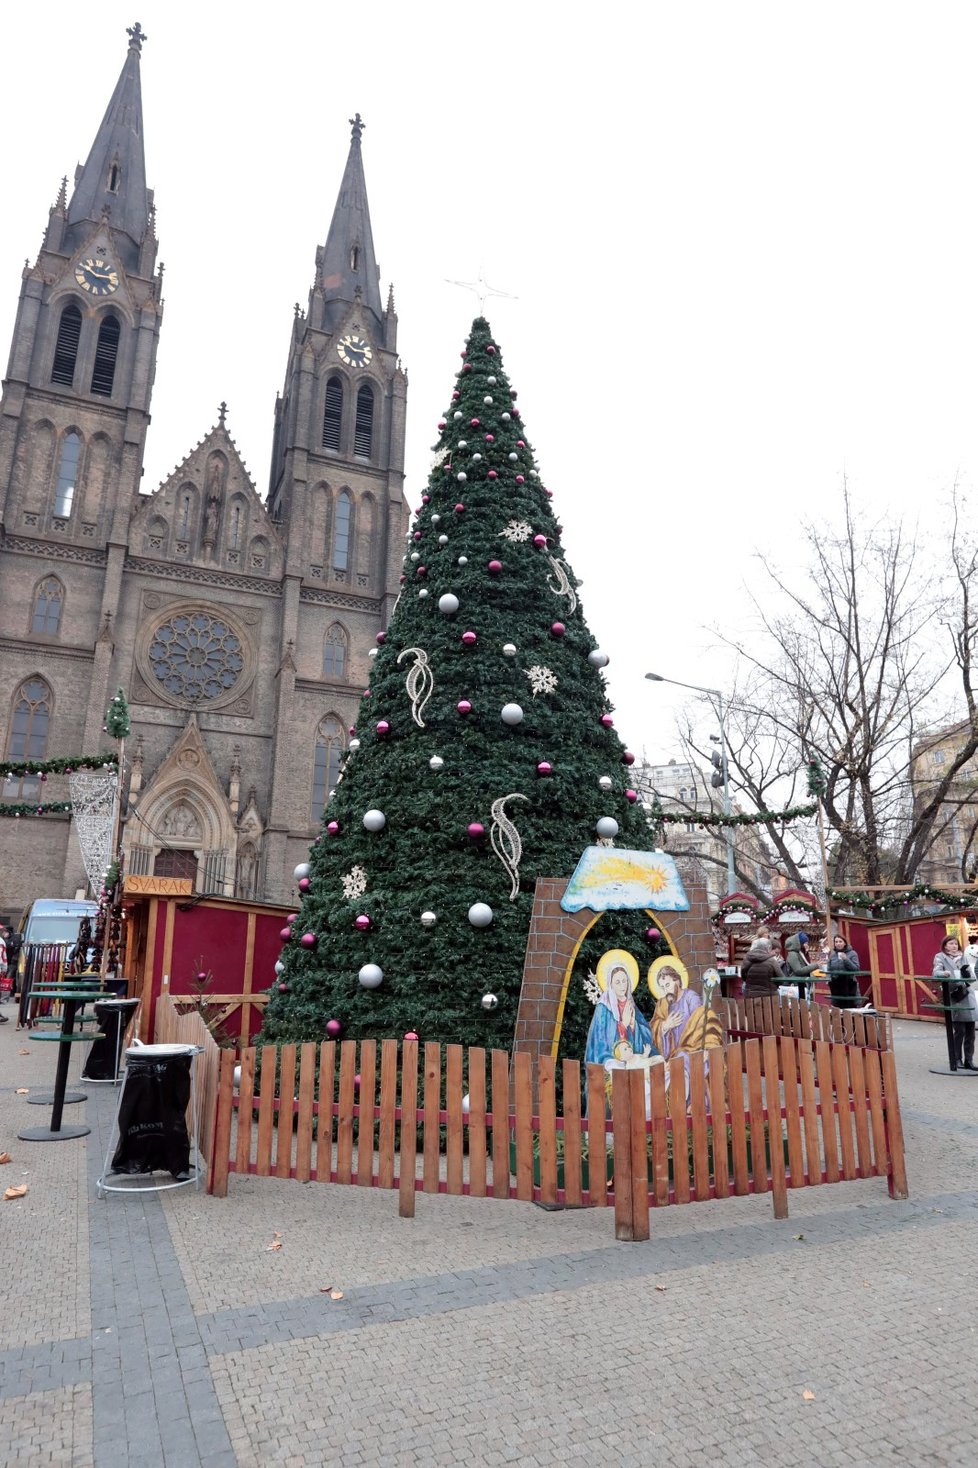 Na Náměstí Míru už mají Vánoce. Začaly tu tradiční vánoční trhy.